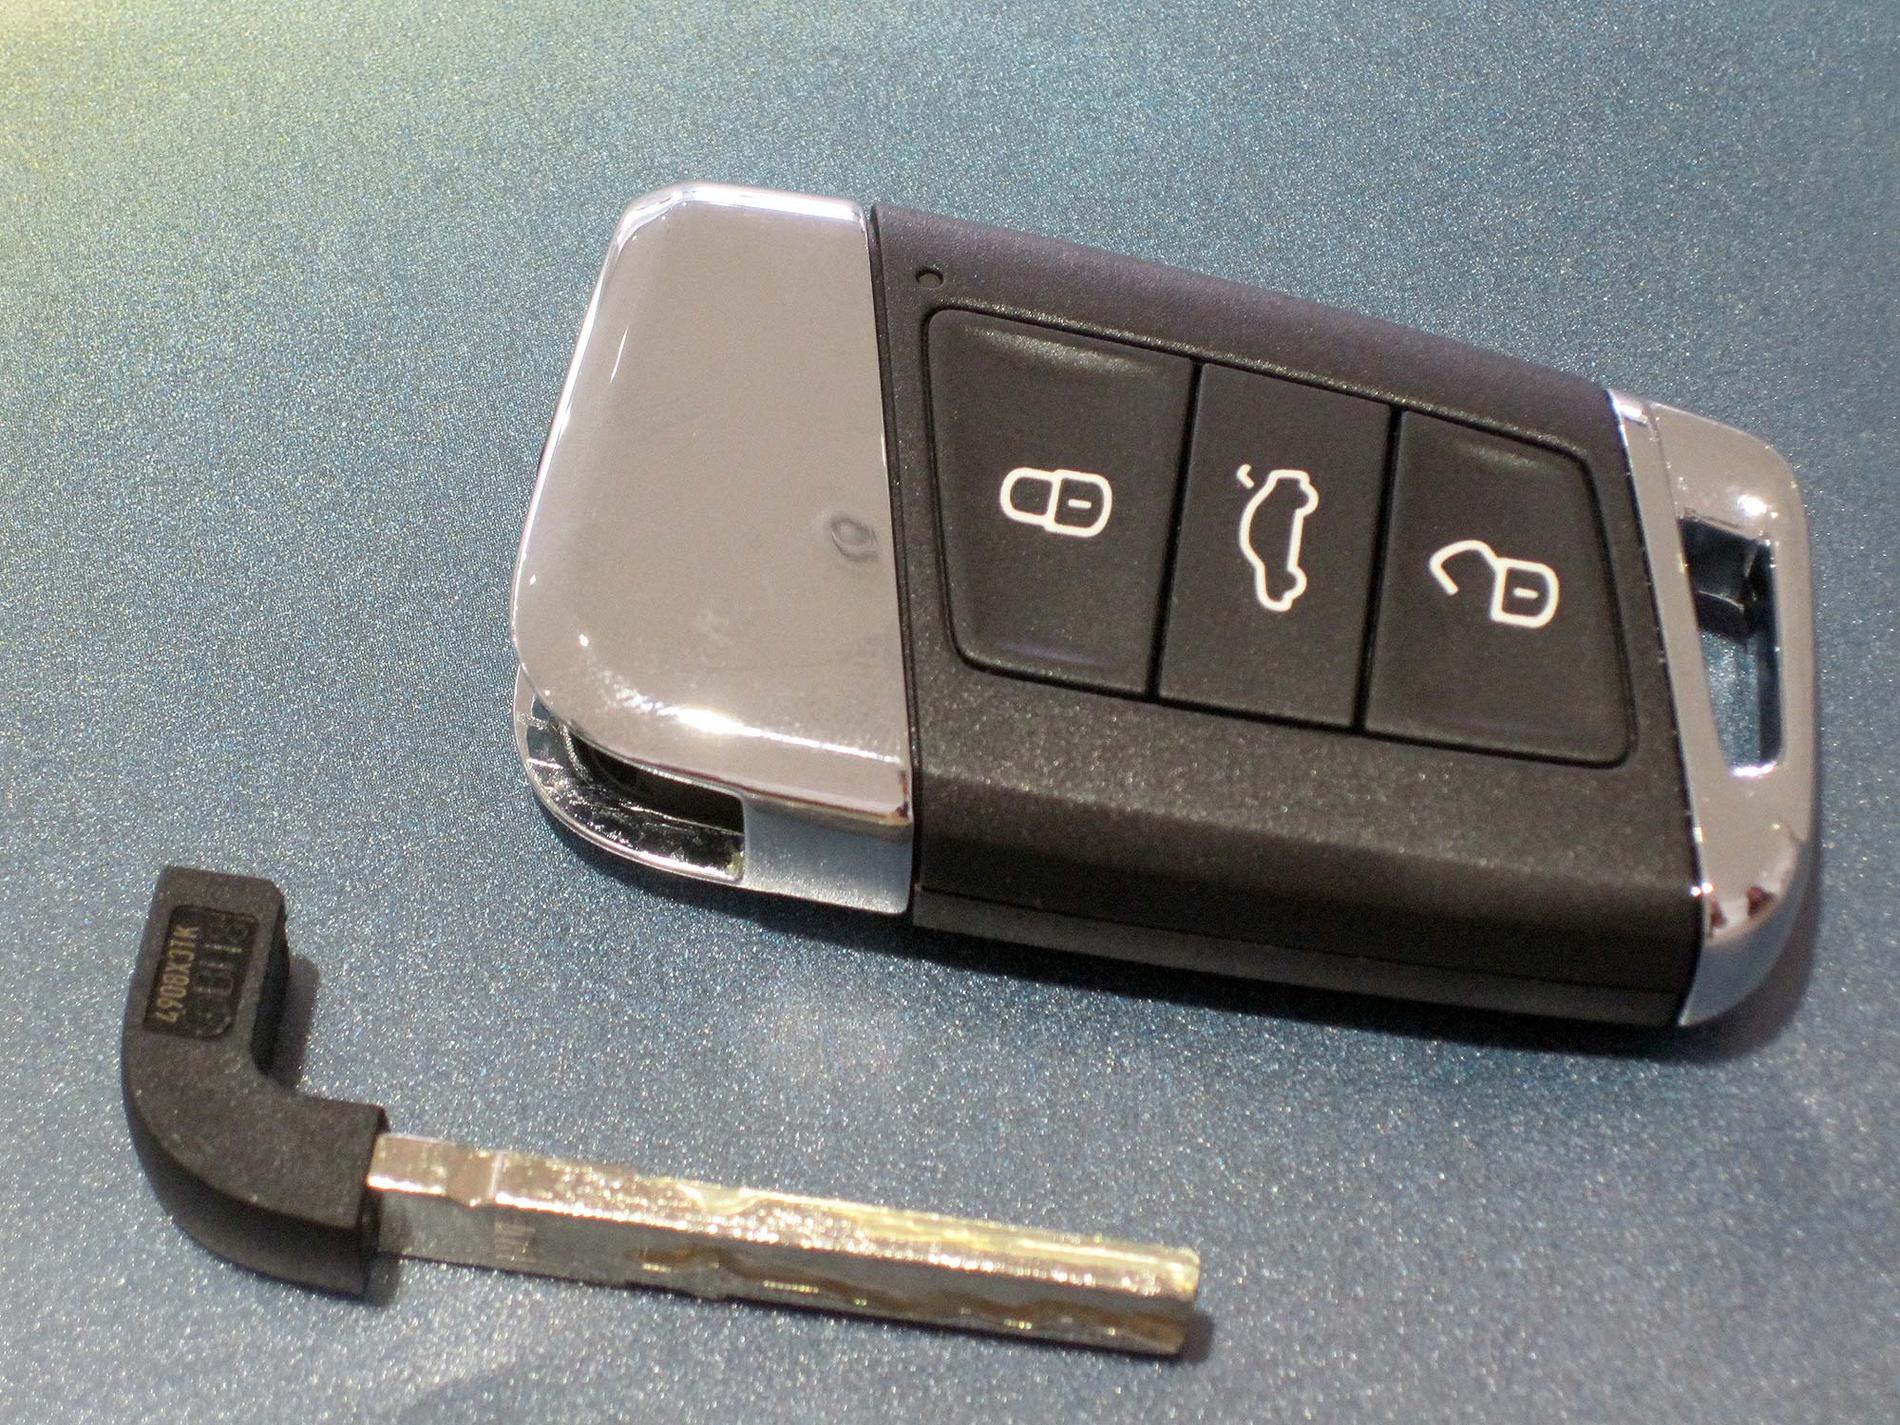 Bilnyckel till Volkswagen.